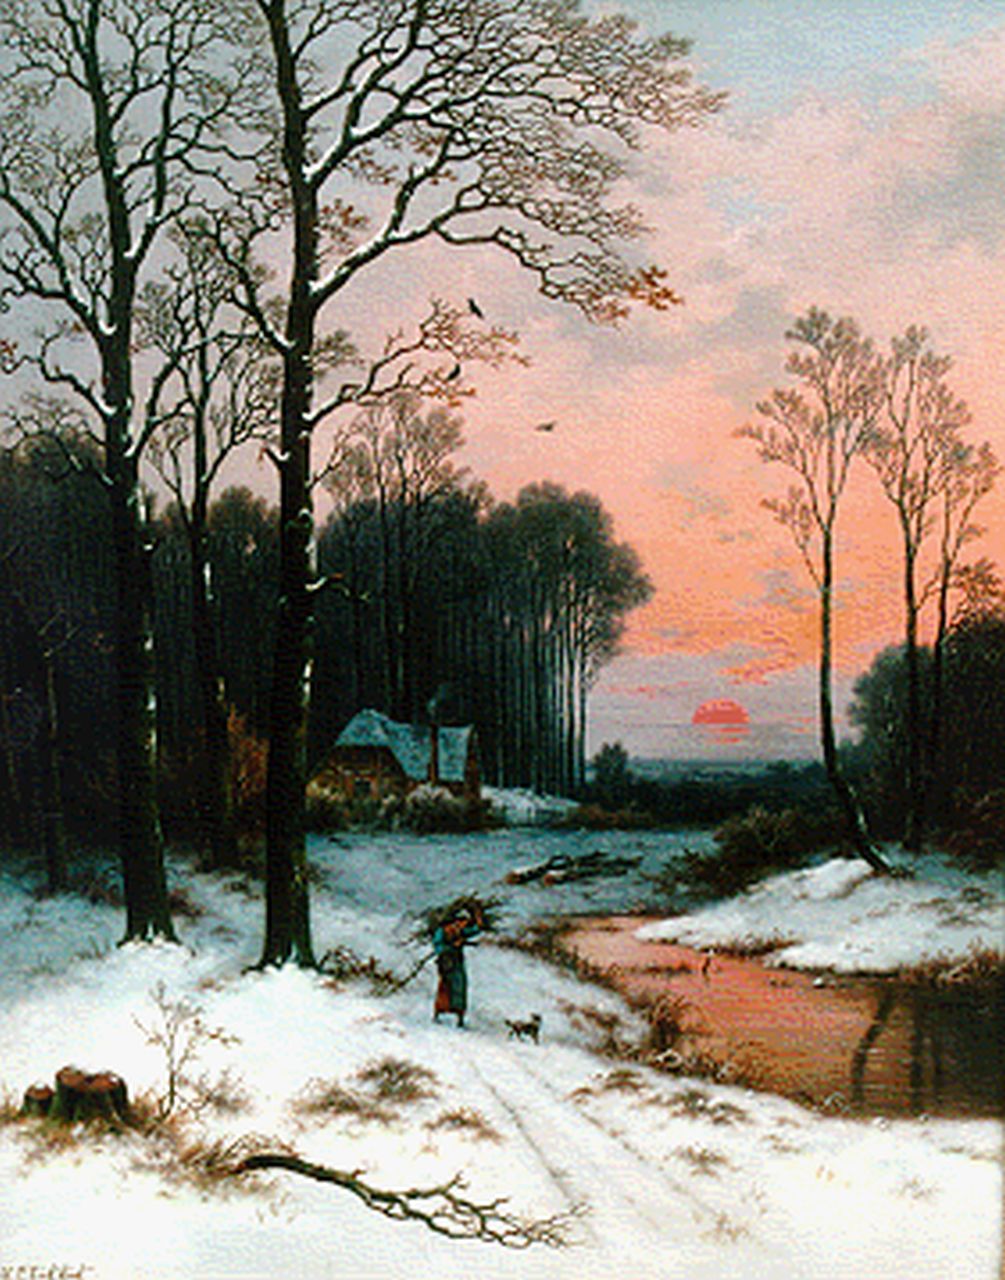 Koekkoek P.H.  | Pieter Hendrik 'H.P.' Koekkoek, Winters bosgezicht, olieverf op doek 81,0 x 64,7 cm, gesigneerd linksonder